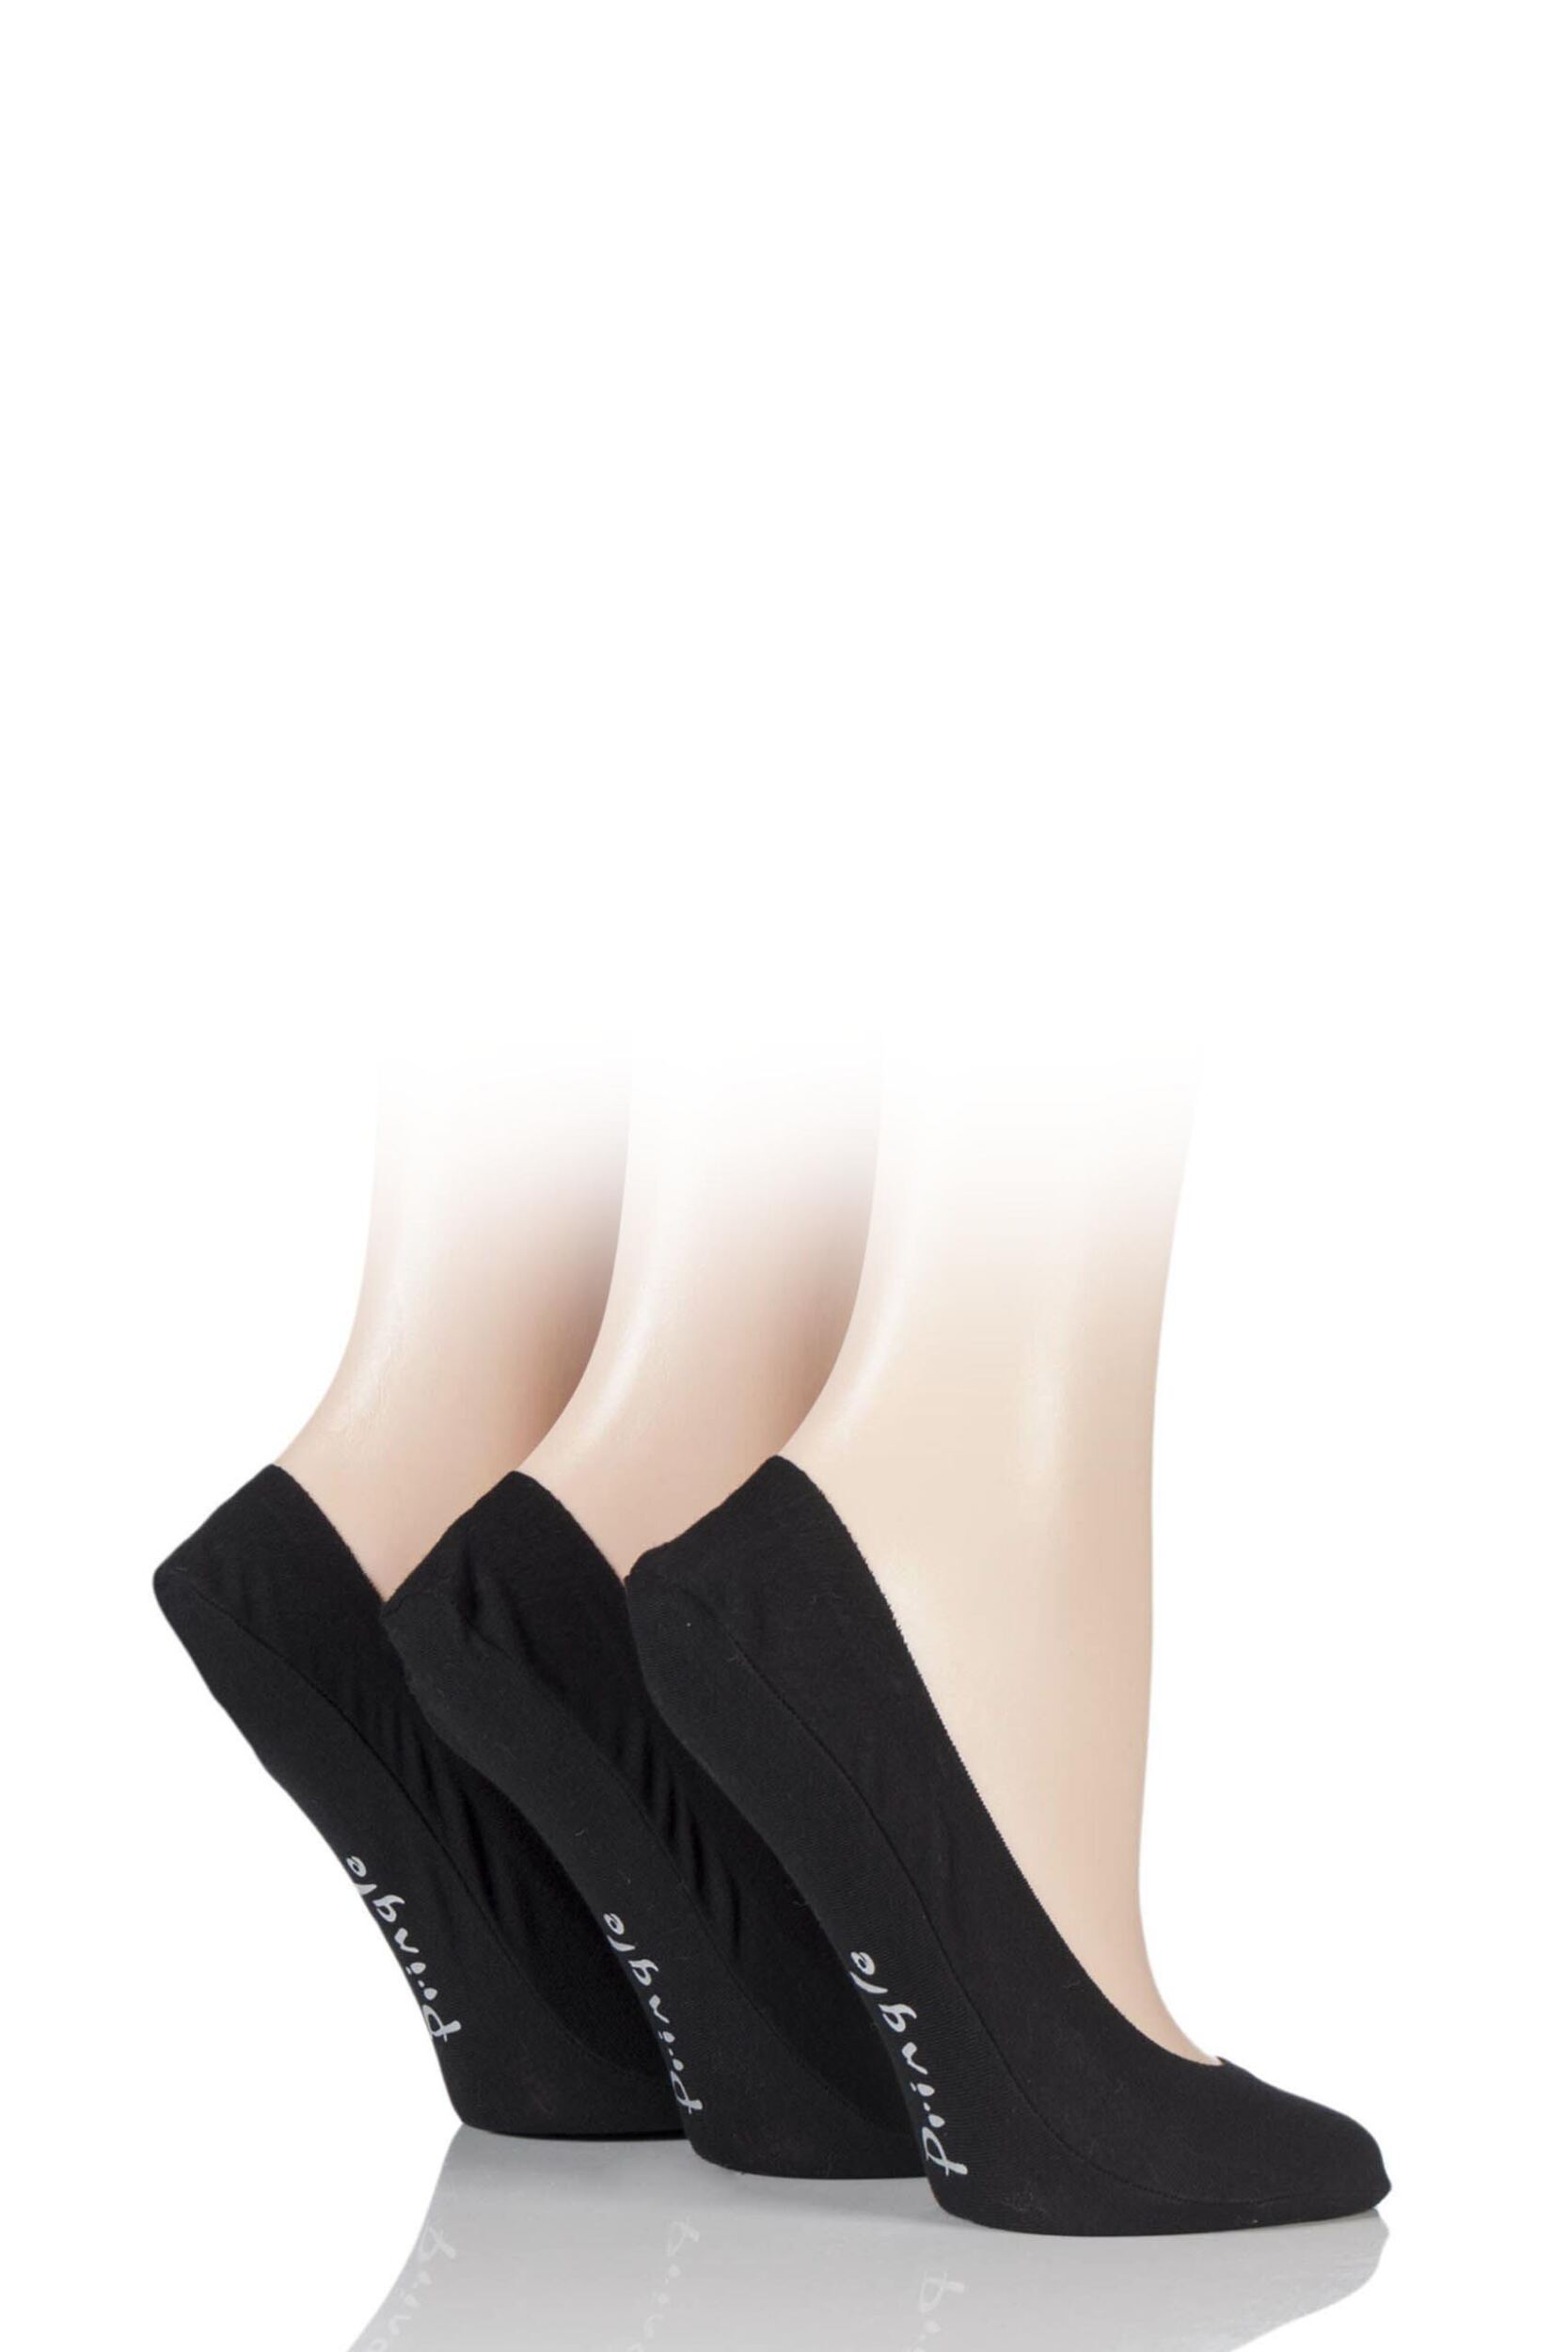 3 Pair Black Marian Shoe Liners Ladies 4-8 Ladies - Pringle